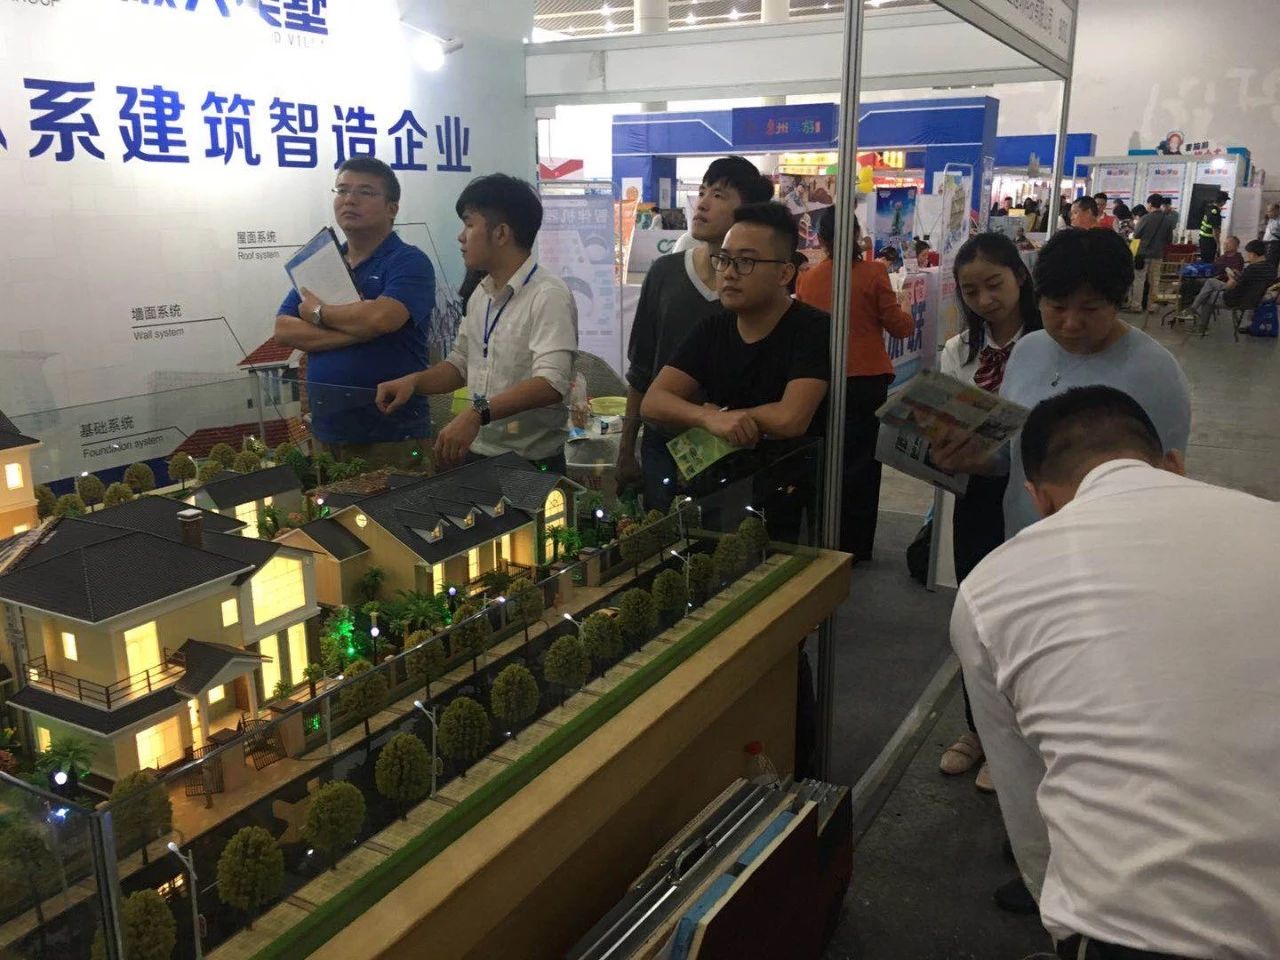 2018 Huizhou Tourism Culture Expo is the perfect ending, Shunda Meishu shines